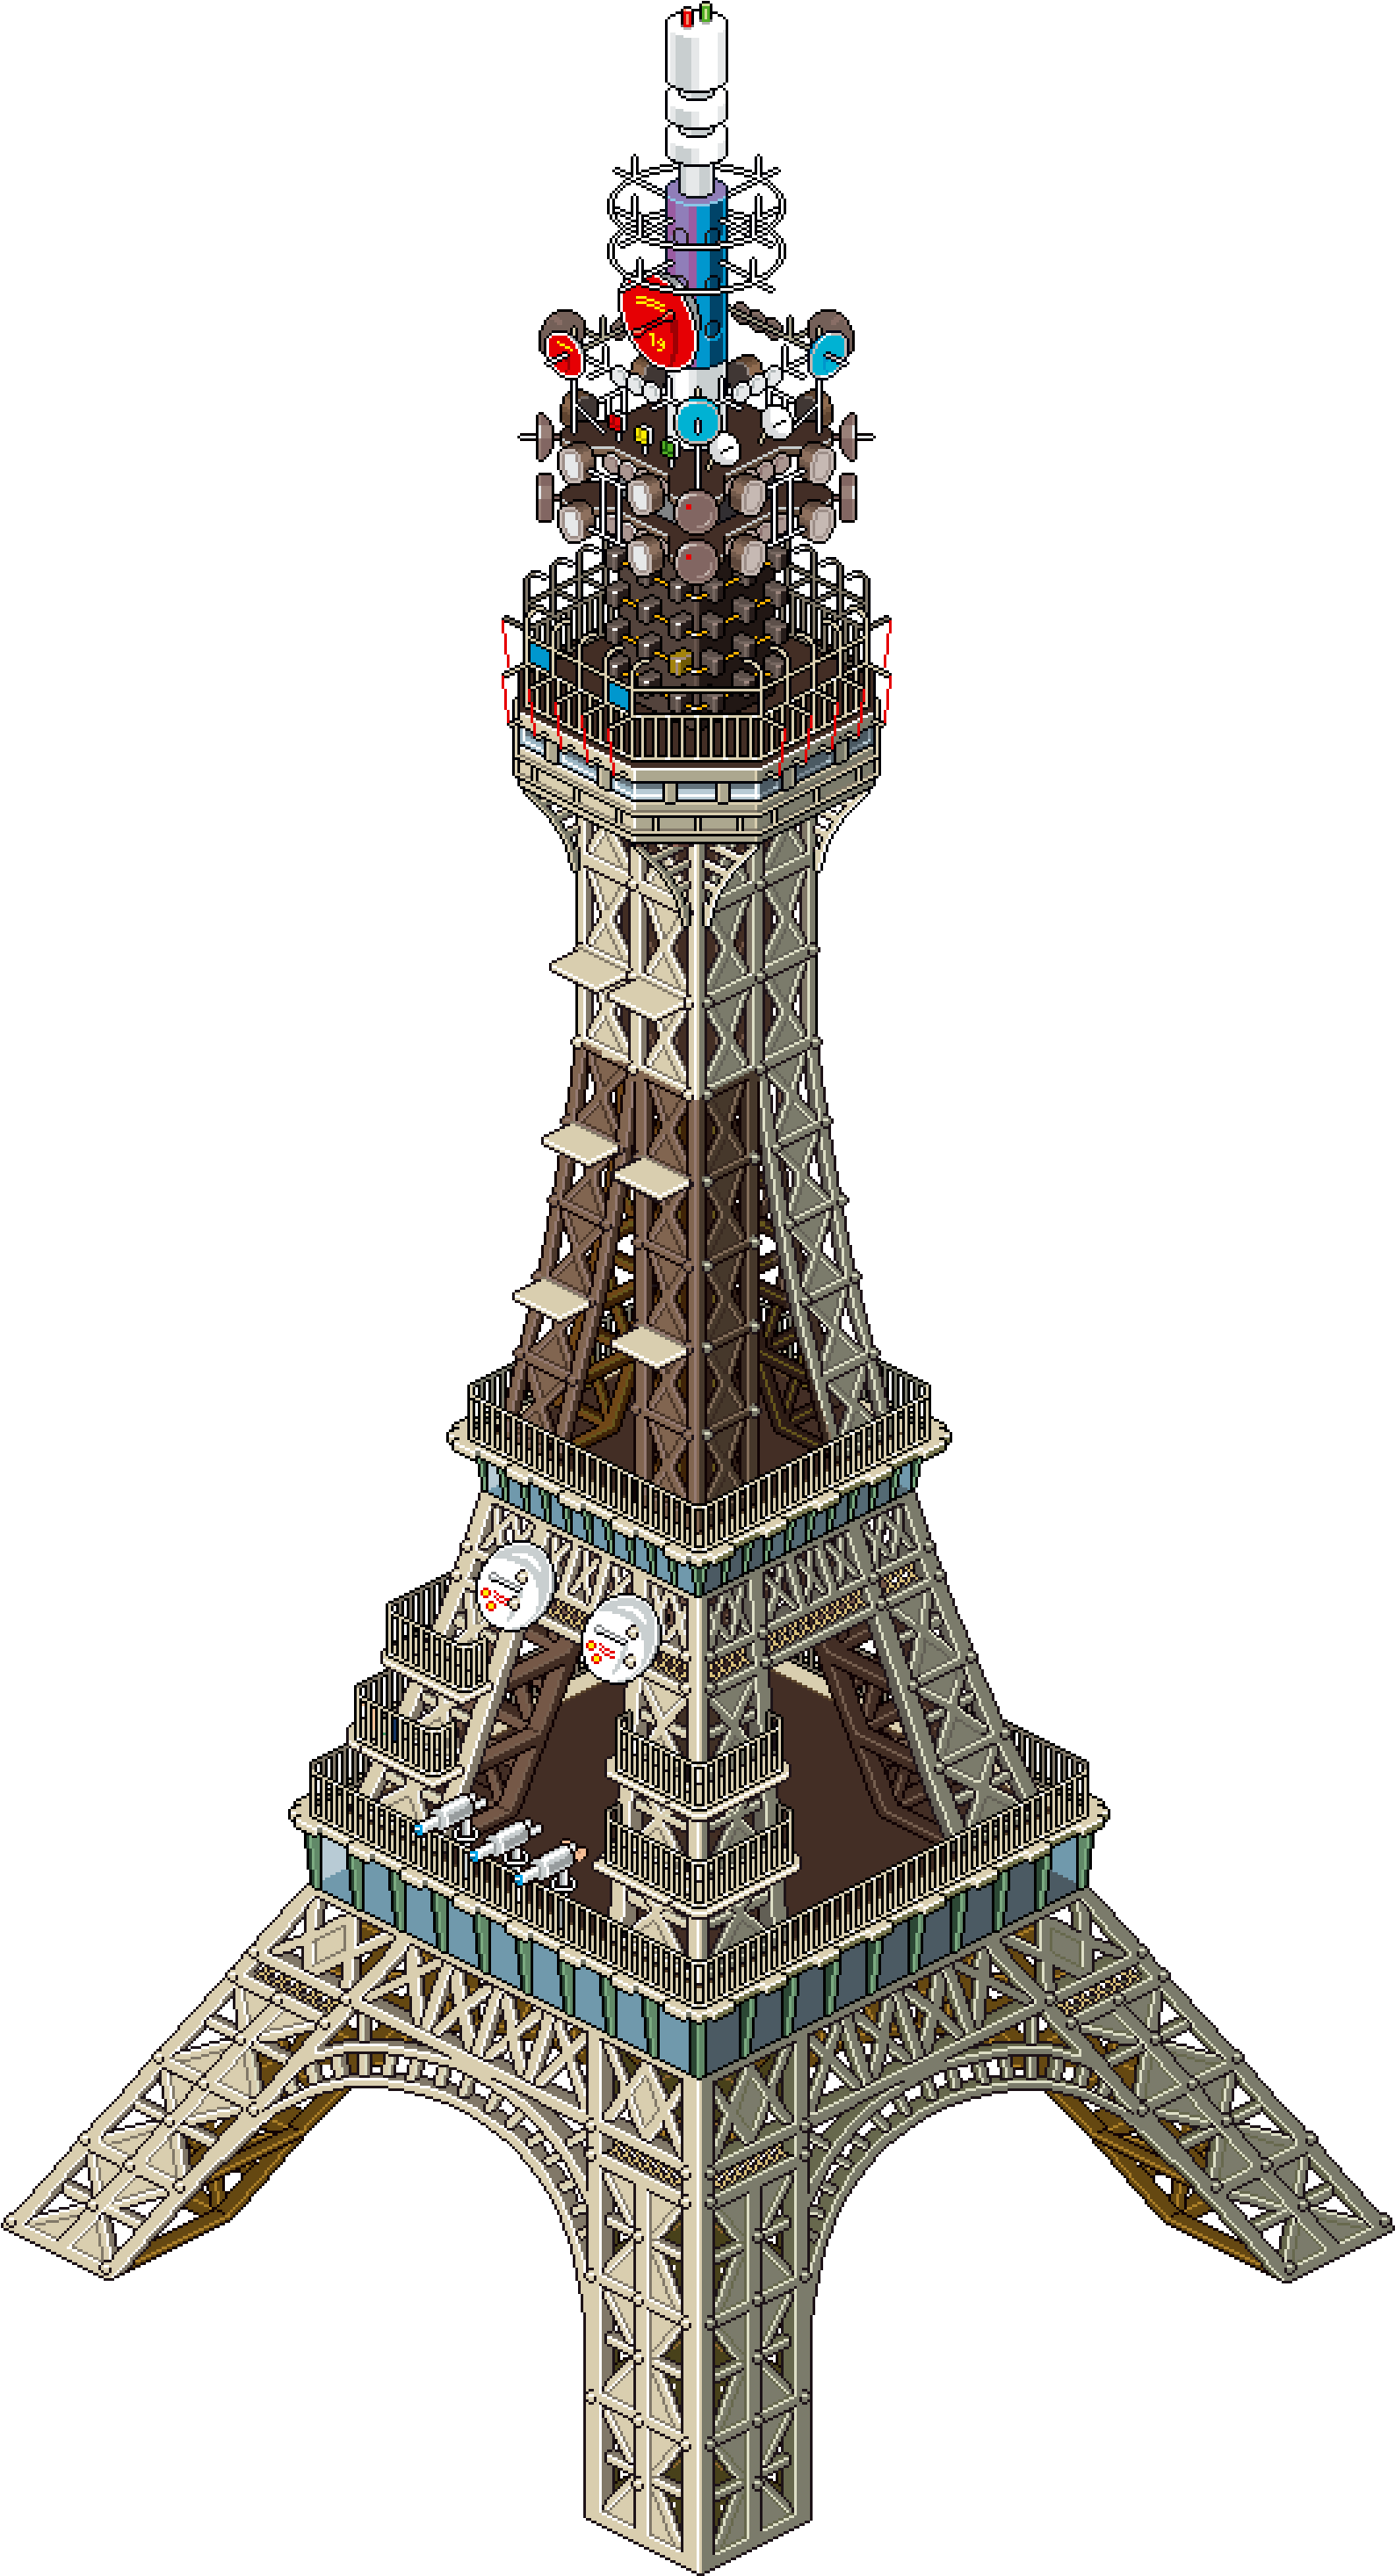 Pt Paris Eiffeltowersmaller 17k - Eiffel Tower Isometric View Clipart (1587x2961), Png Download